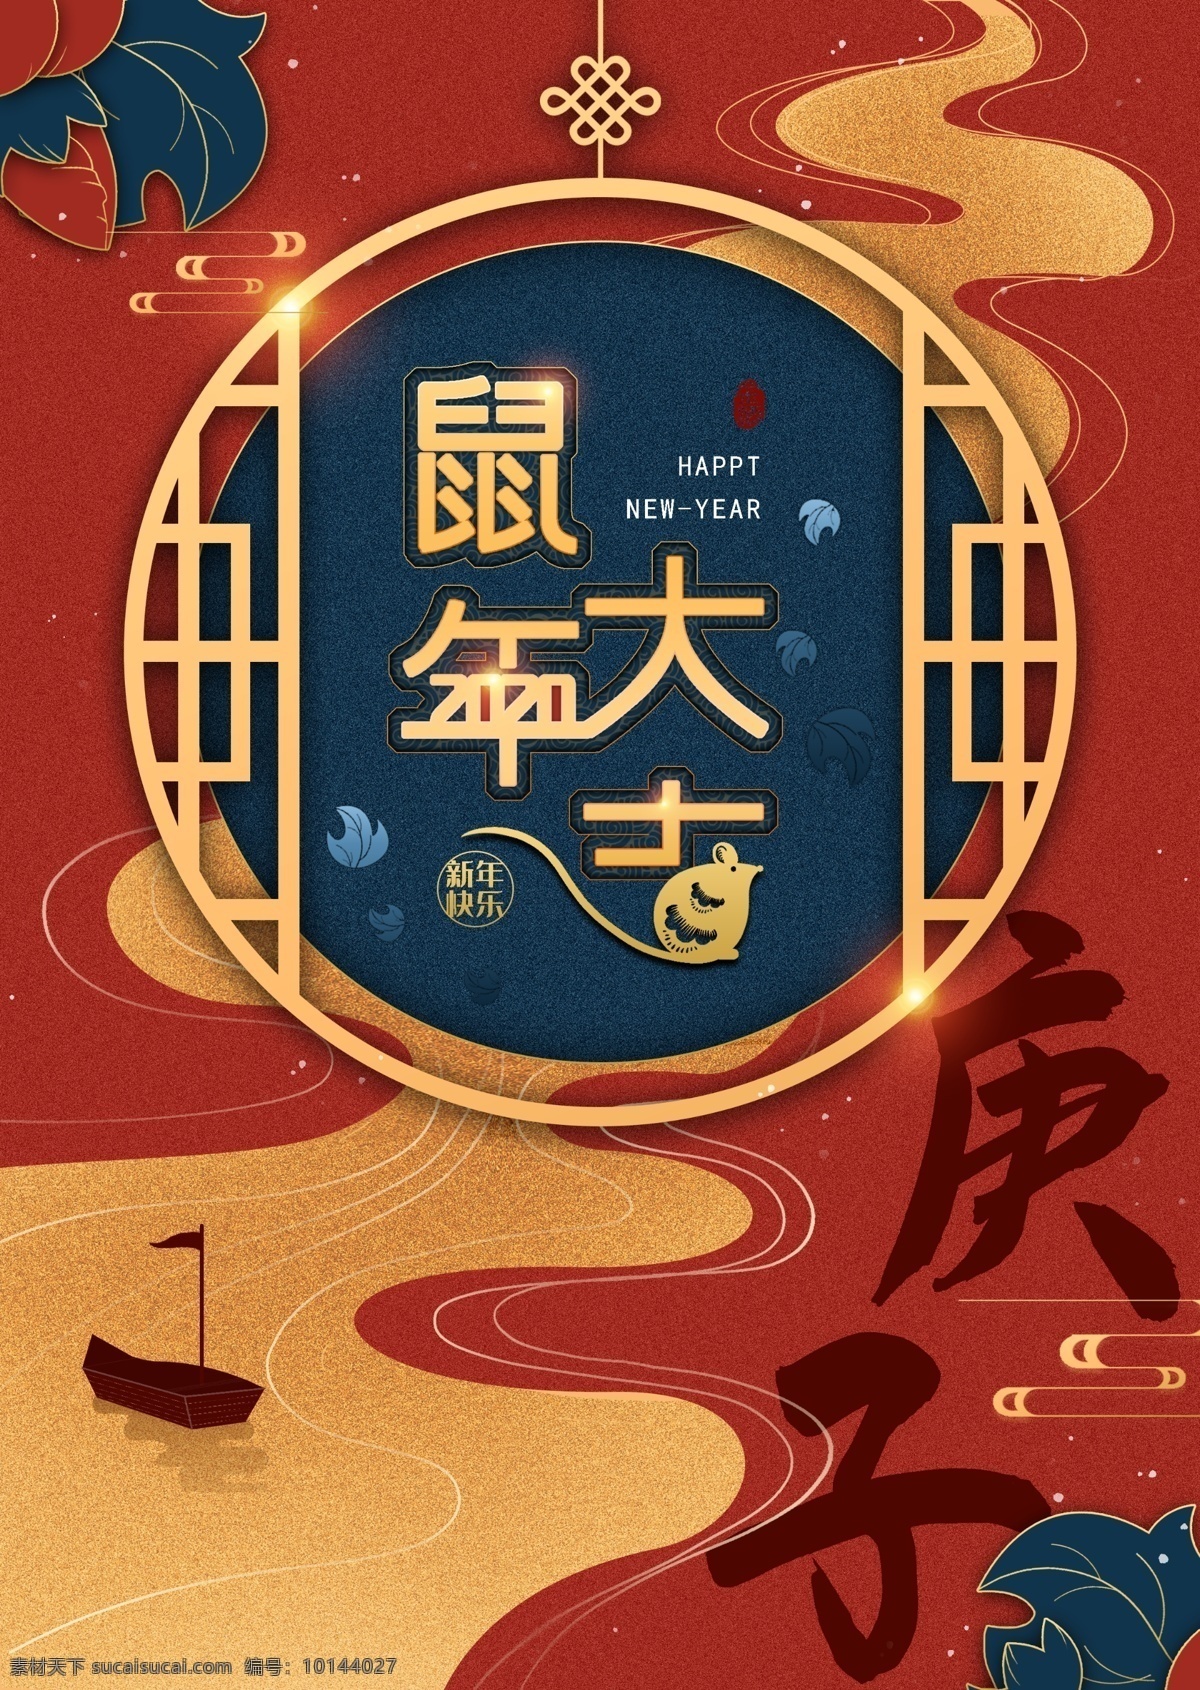 原创 精品 鼠年 剪纸 风 创意 海报 中国风 红色背景 古典 节日海报